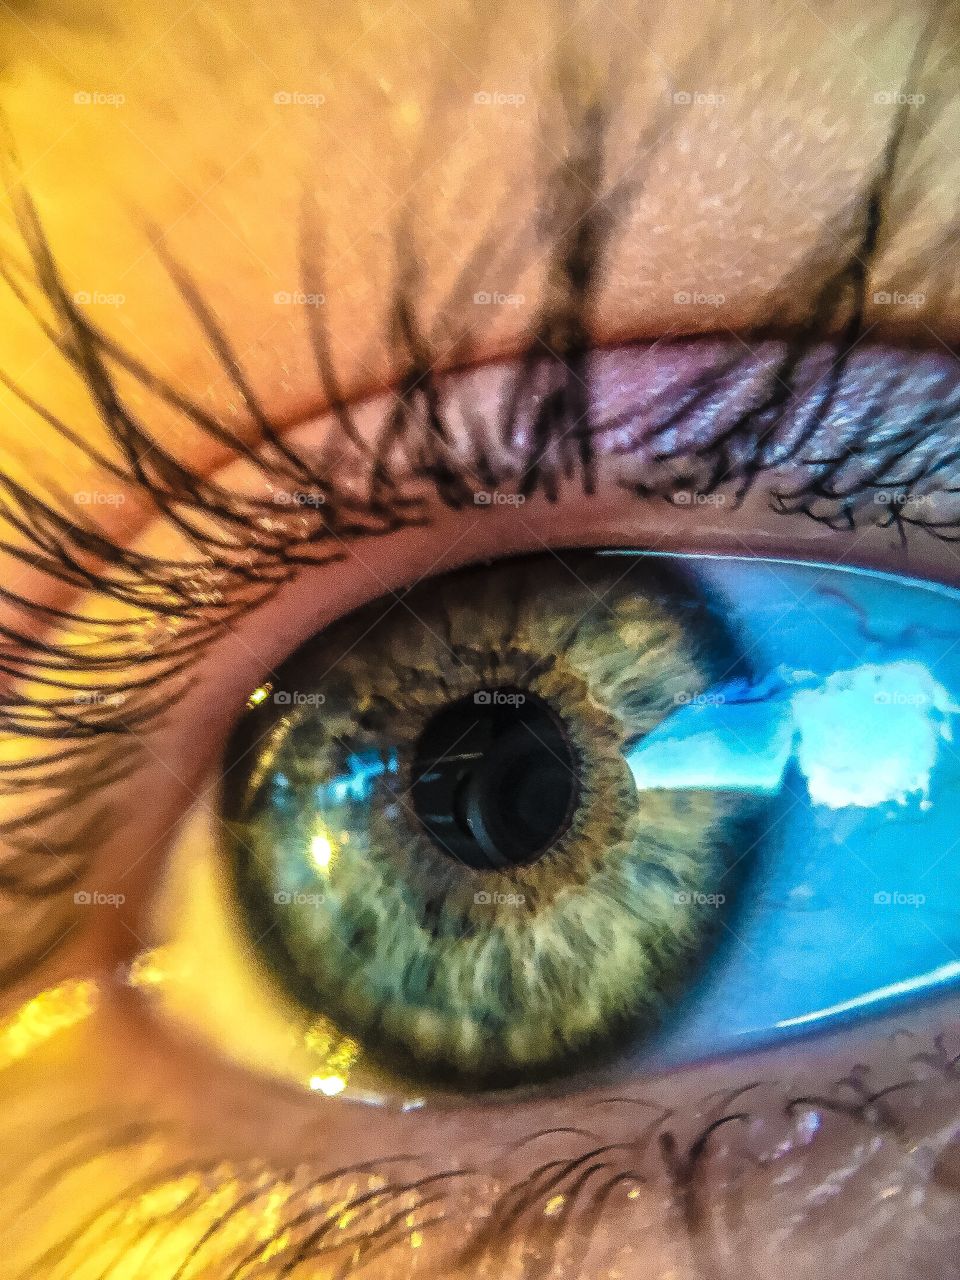 Detail of human eye